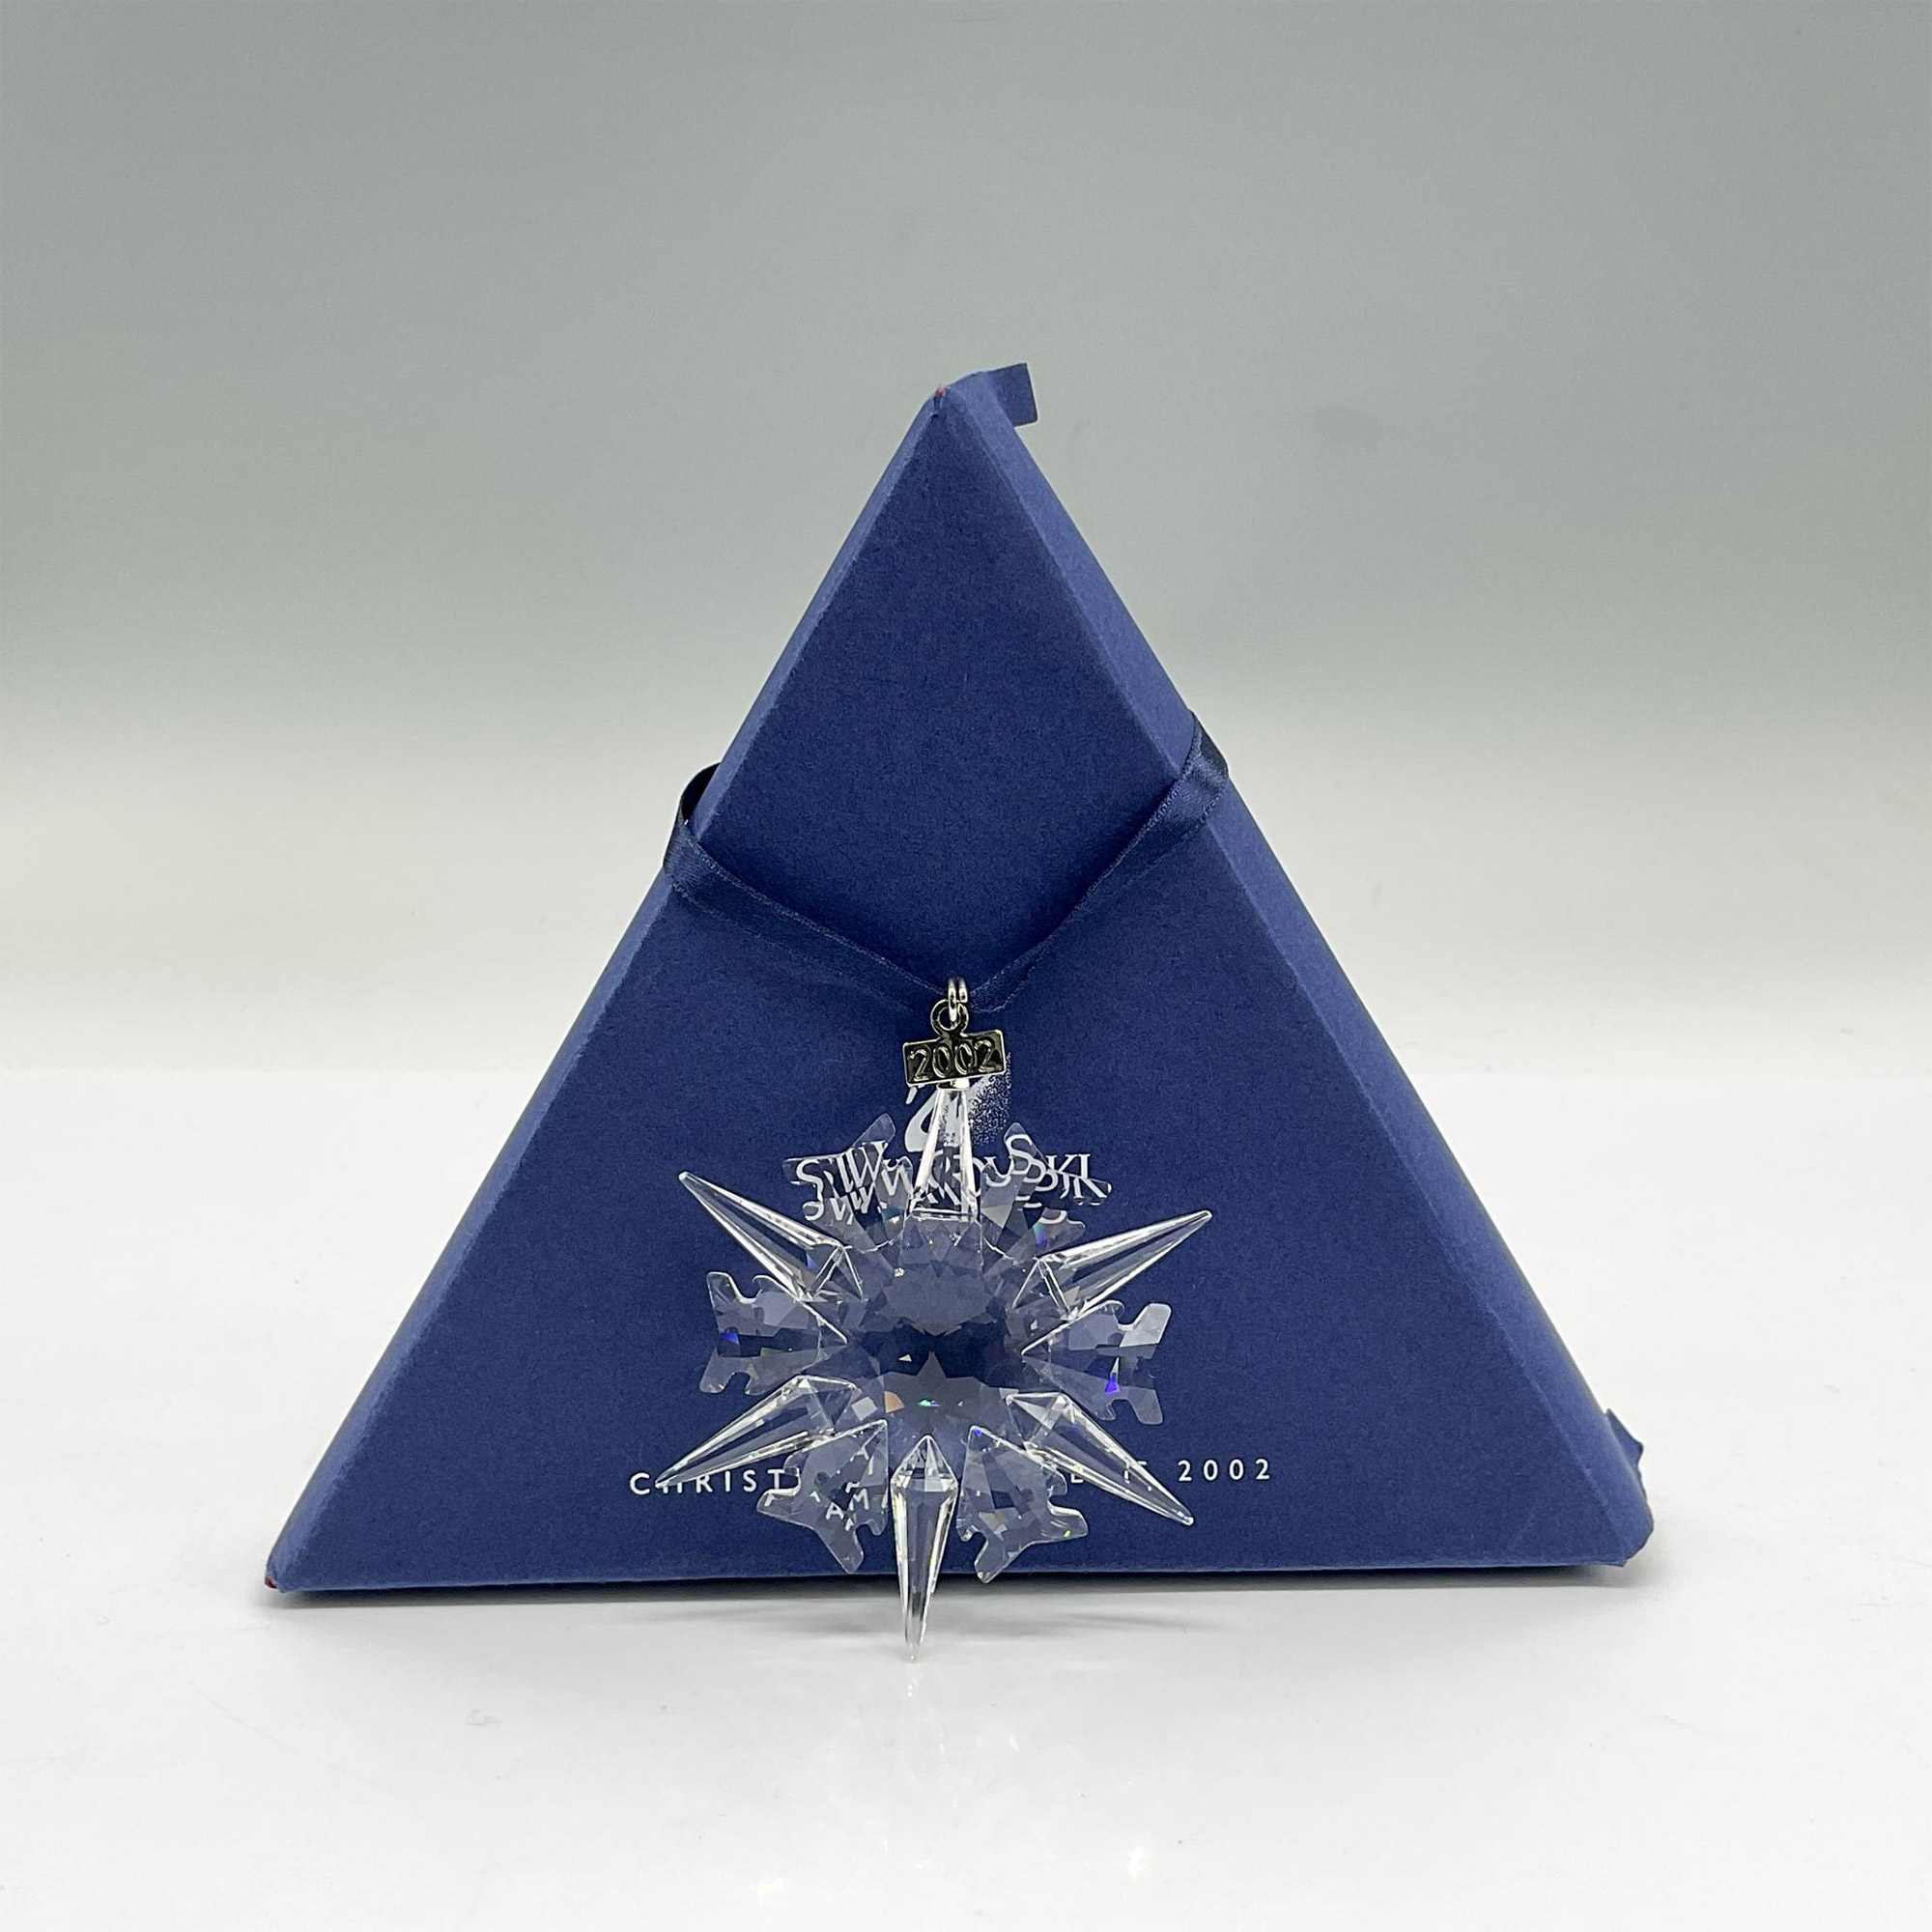 Swarovski Crystal Christmas Ornament 2002 - Image 3 of 3